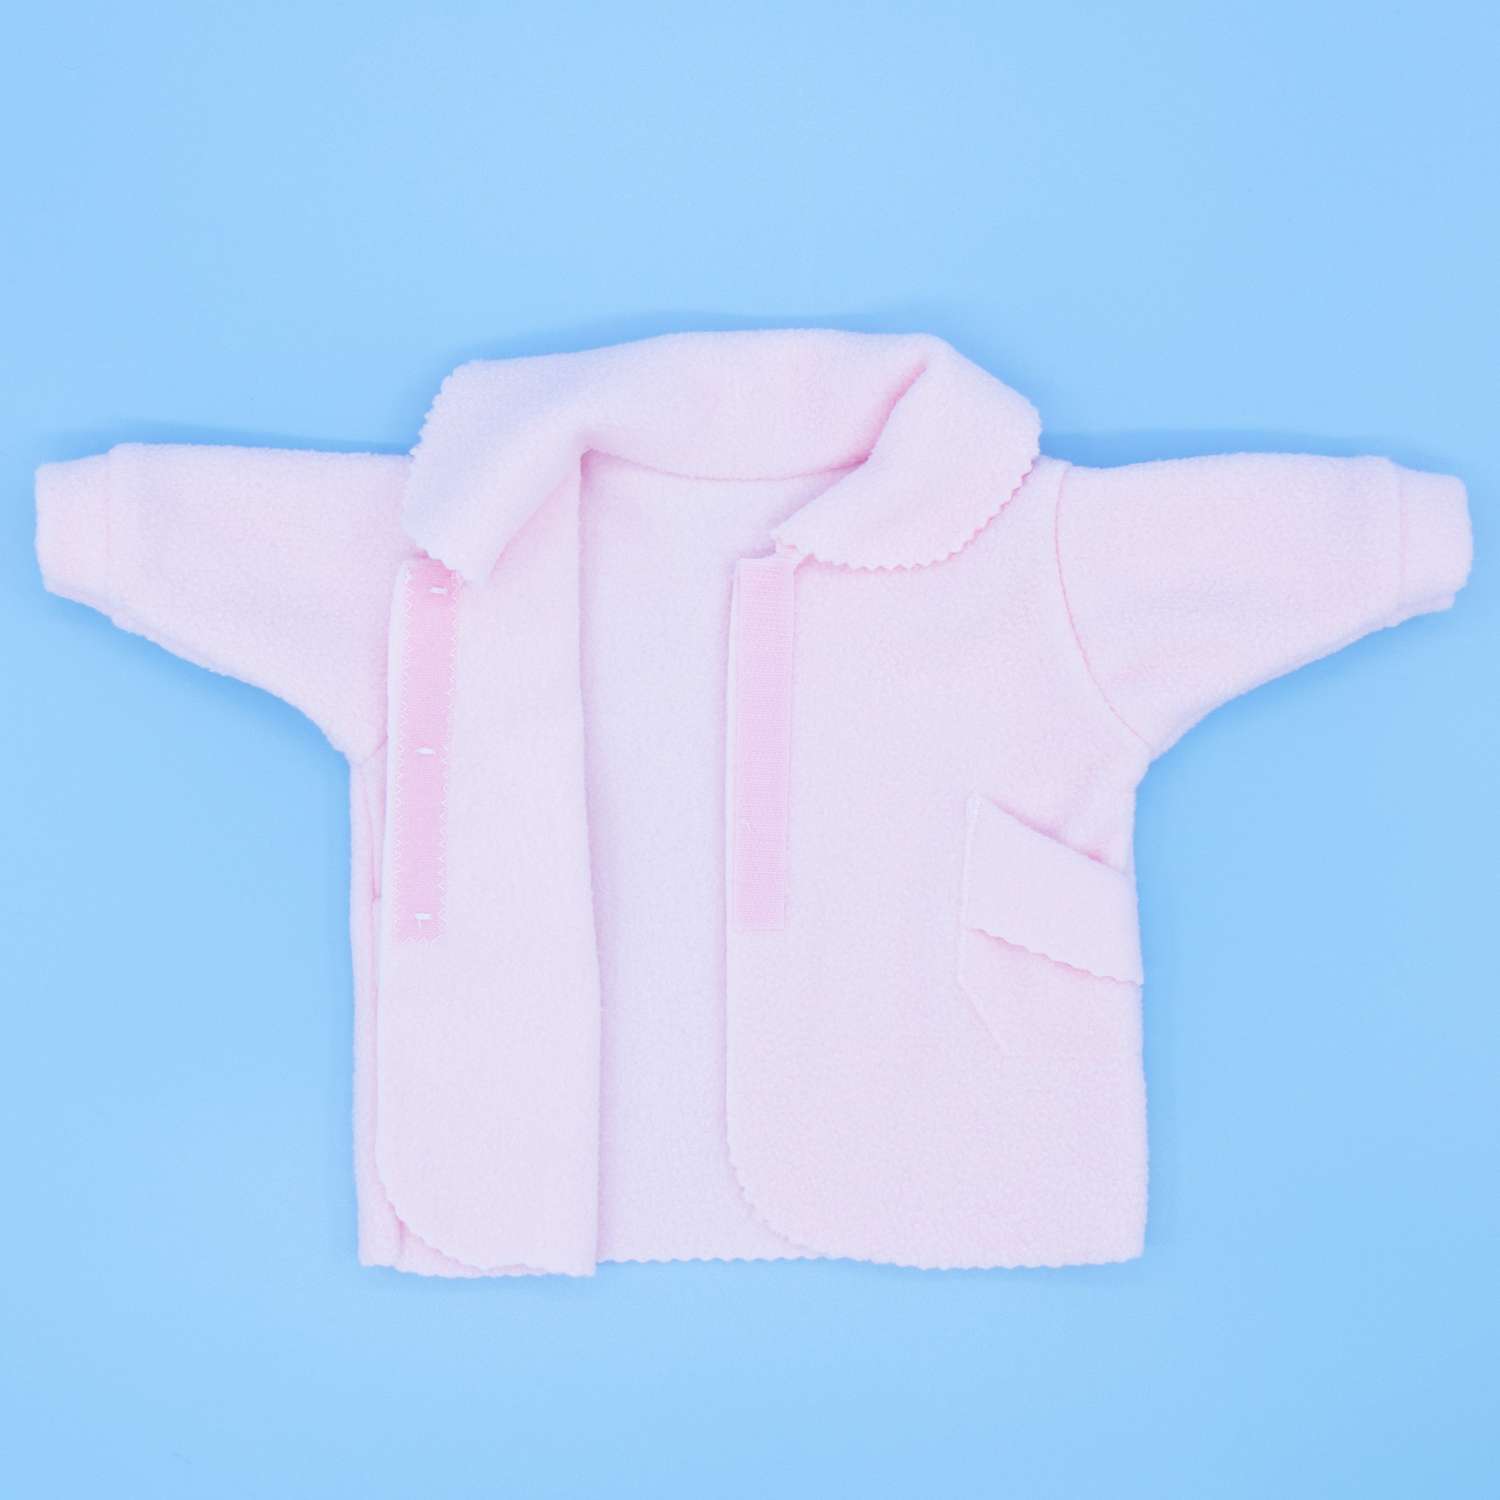 Пальто Модница для пупса 43-48 см 6119 бледно-розовый 6119бледно-розовый - фото 9